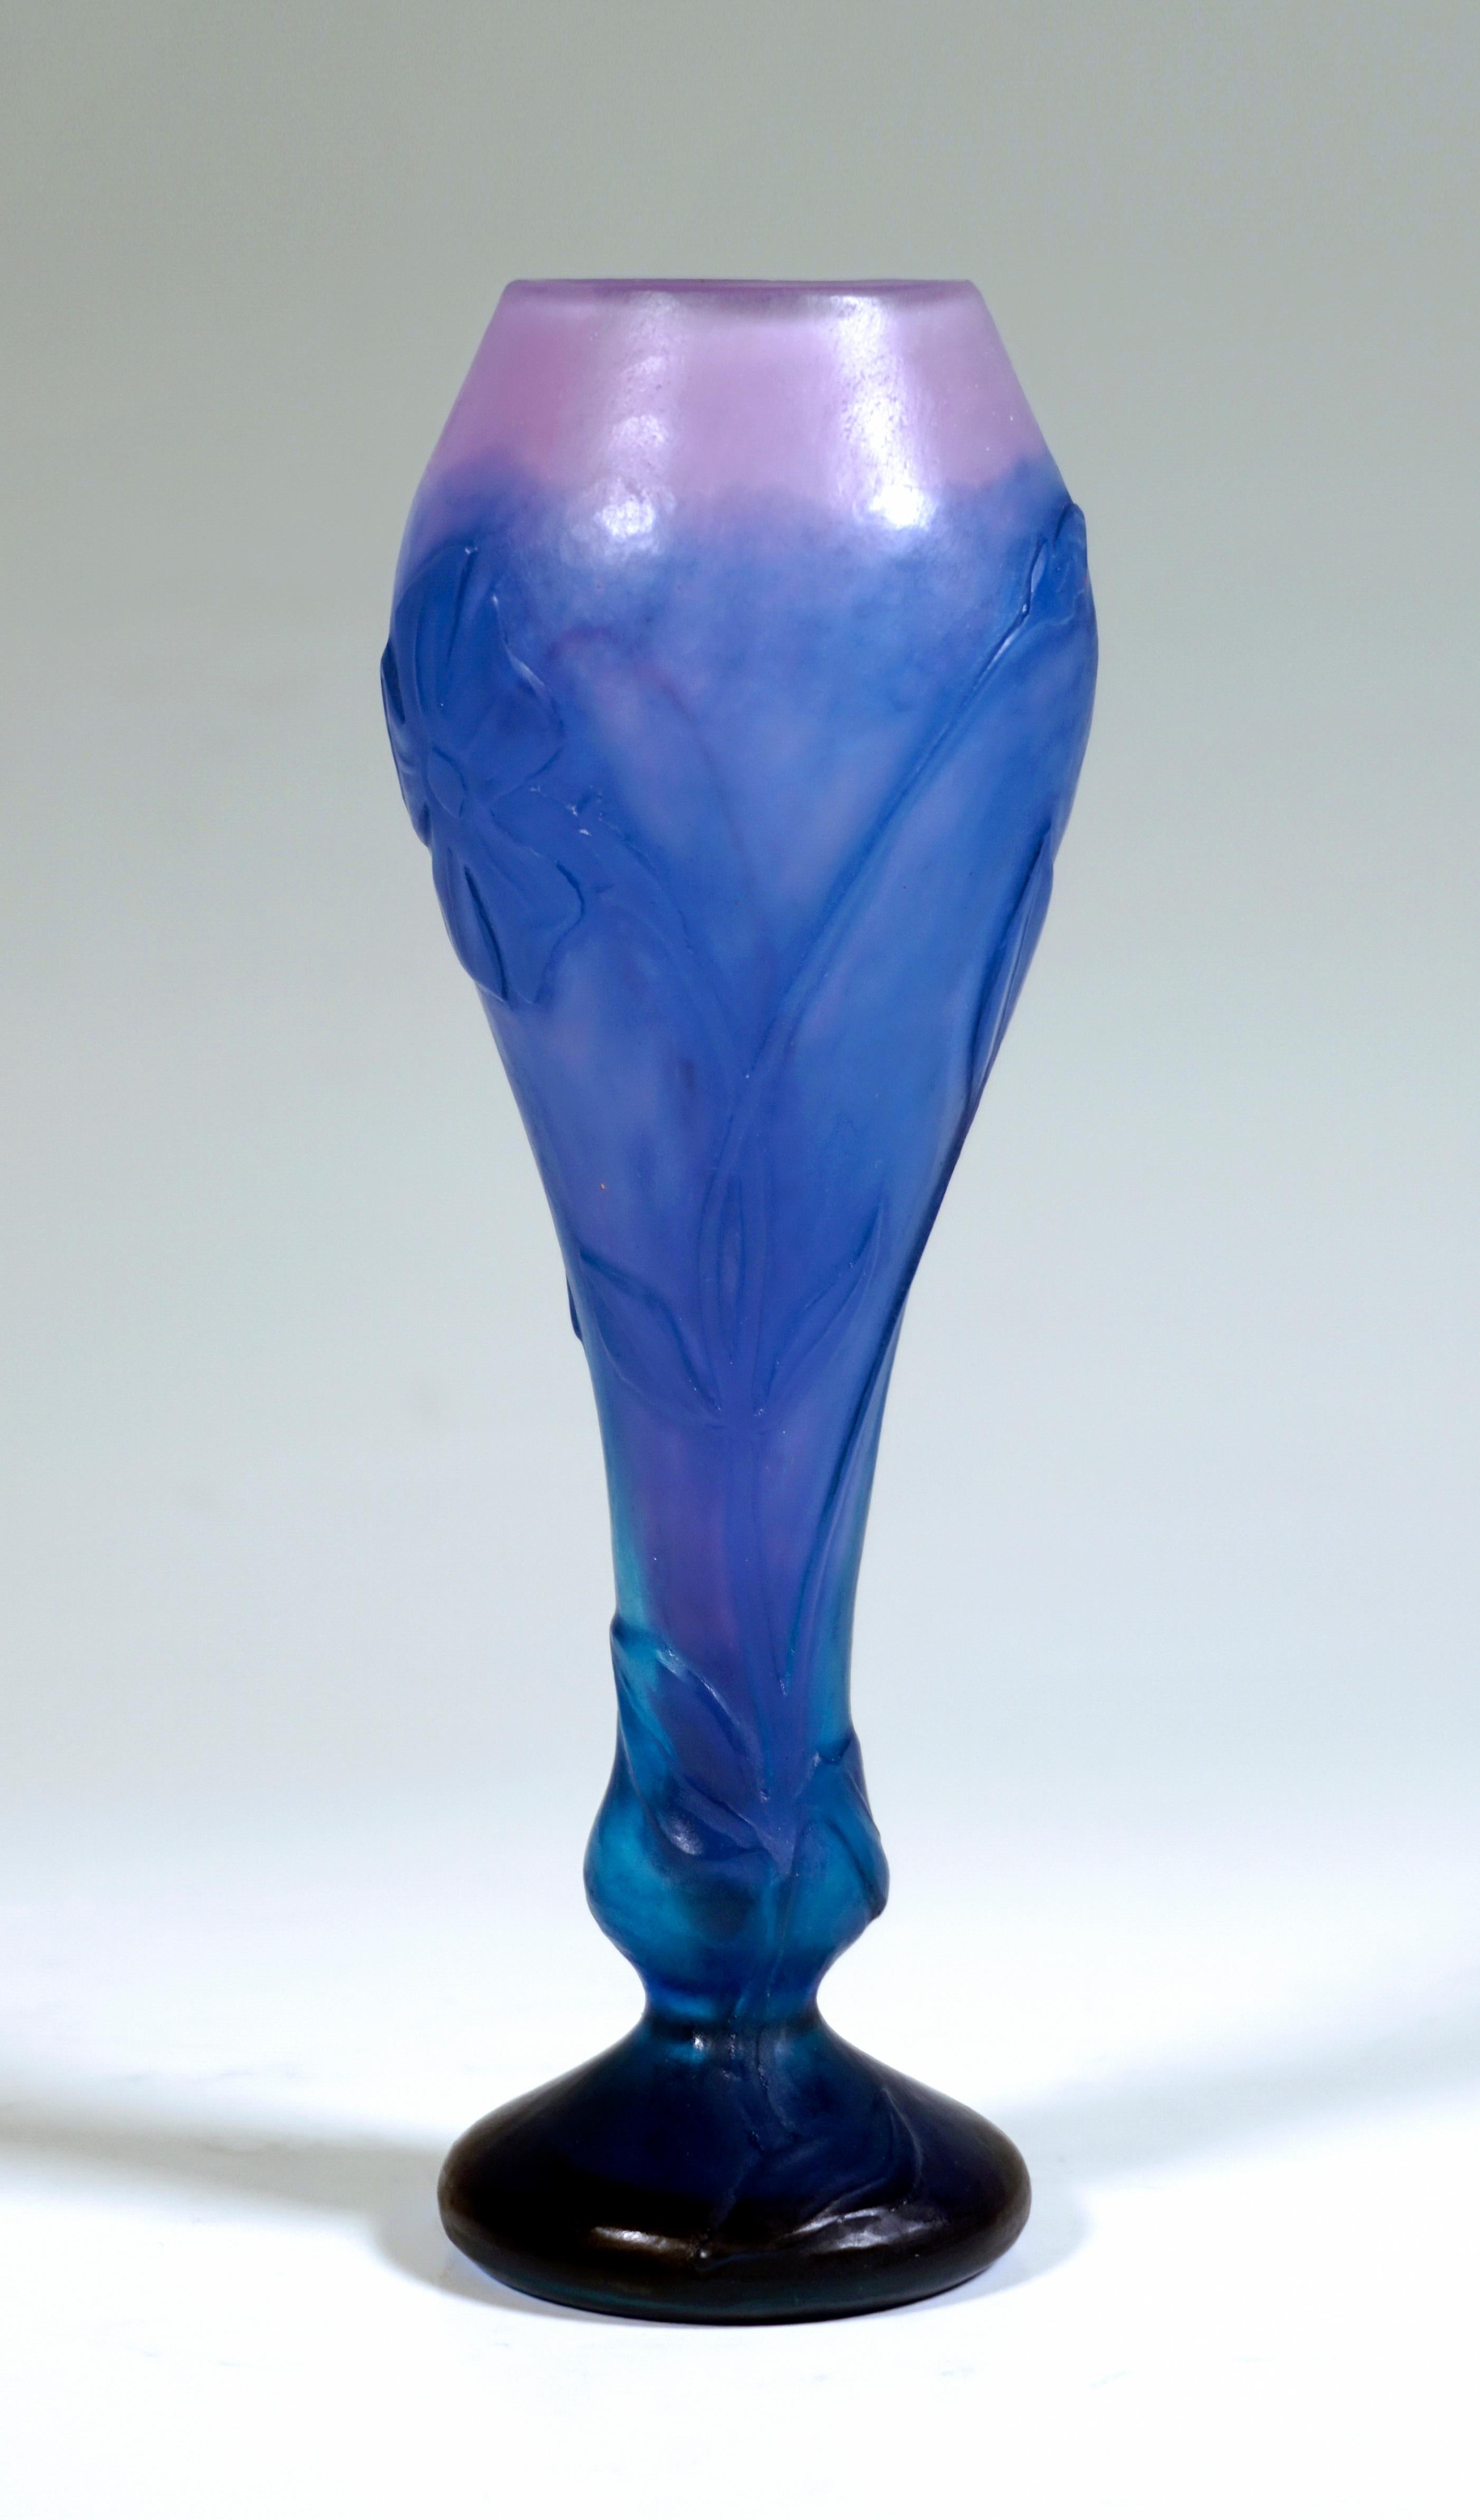 Sehr seltenes und außergewöhnliches Stück Jugendstilglas:
Kleine balusterförmige Vase auf einem separaten Ständer, die eine kleine Ausbuchtung bildet, schlank, langsam nach oben gewölbt und zu einer verengten Öffnung hin verjüngt. Farbloses Glas